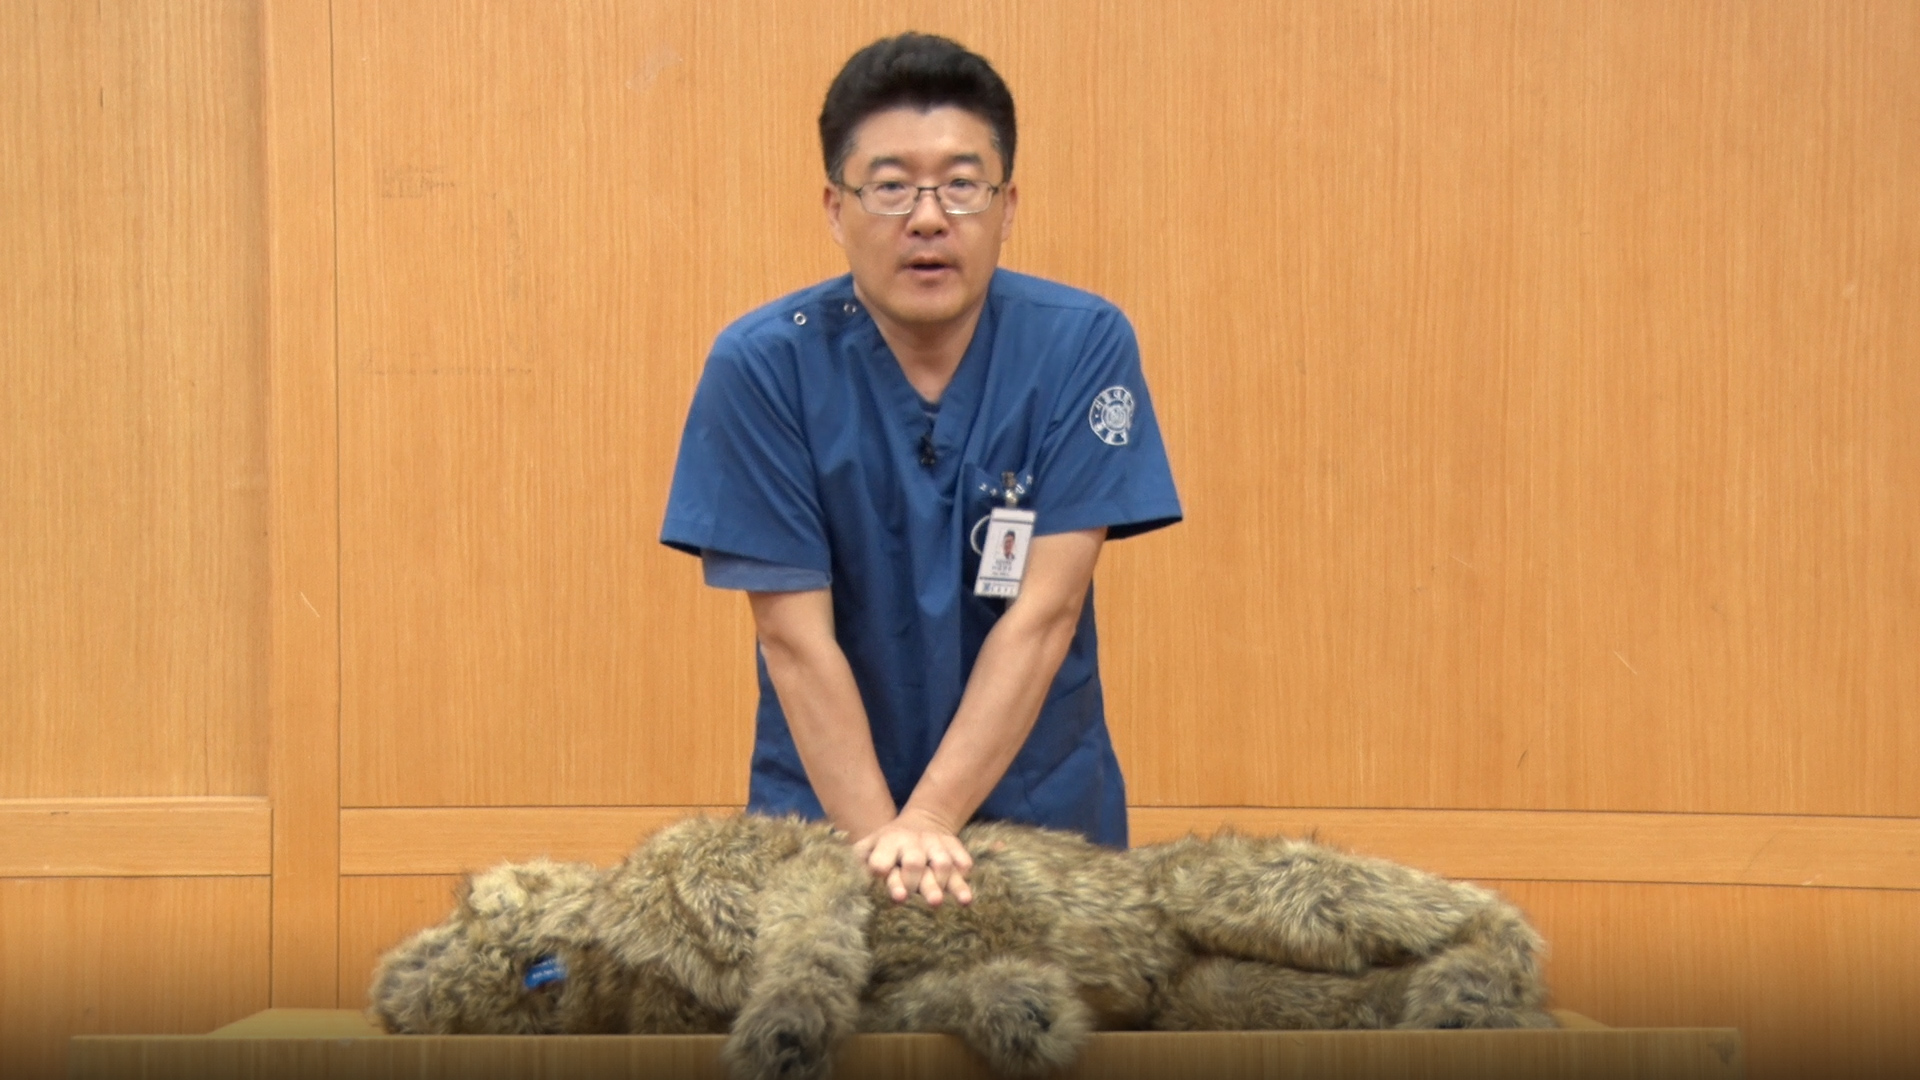 김민수 교수(서울대 수의과대학 응급의학과) 제리라는 동물모형을 통해 심폐소생법을 설명하고 있는 모습